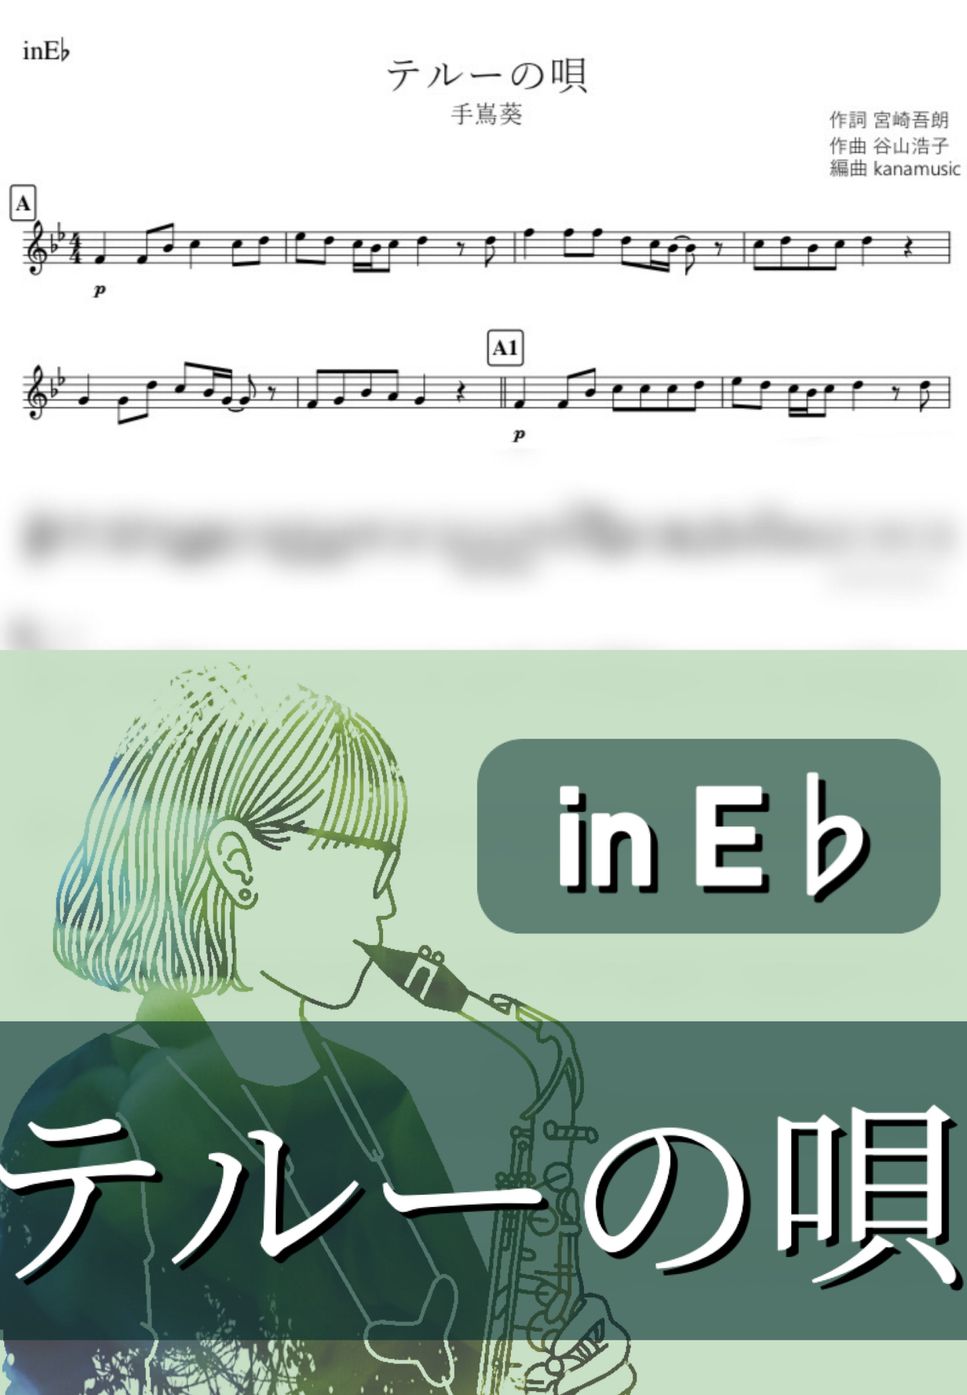 ゲド戦記 - テルーの唄 (E♭) by kanamusic